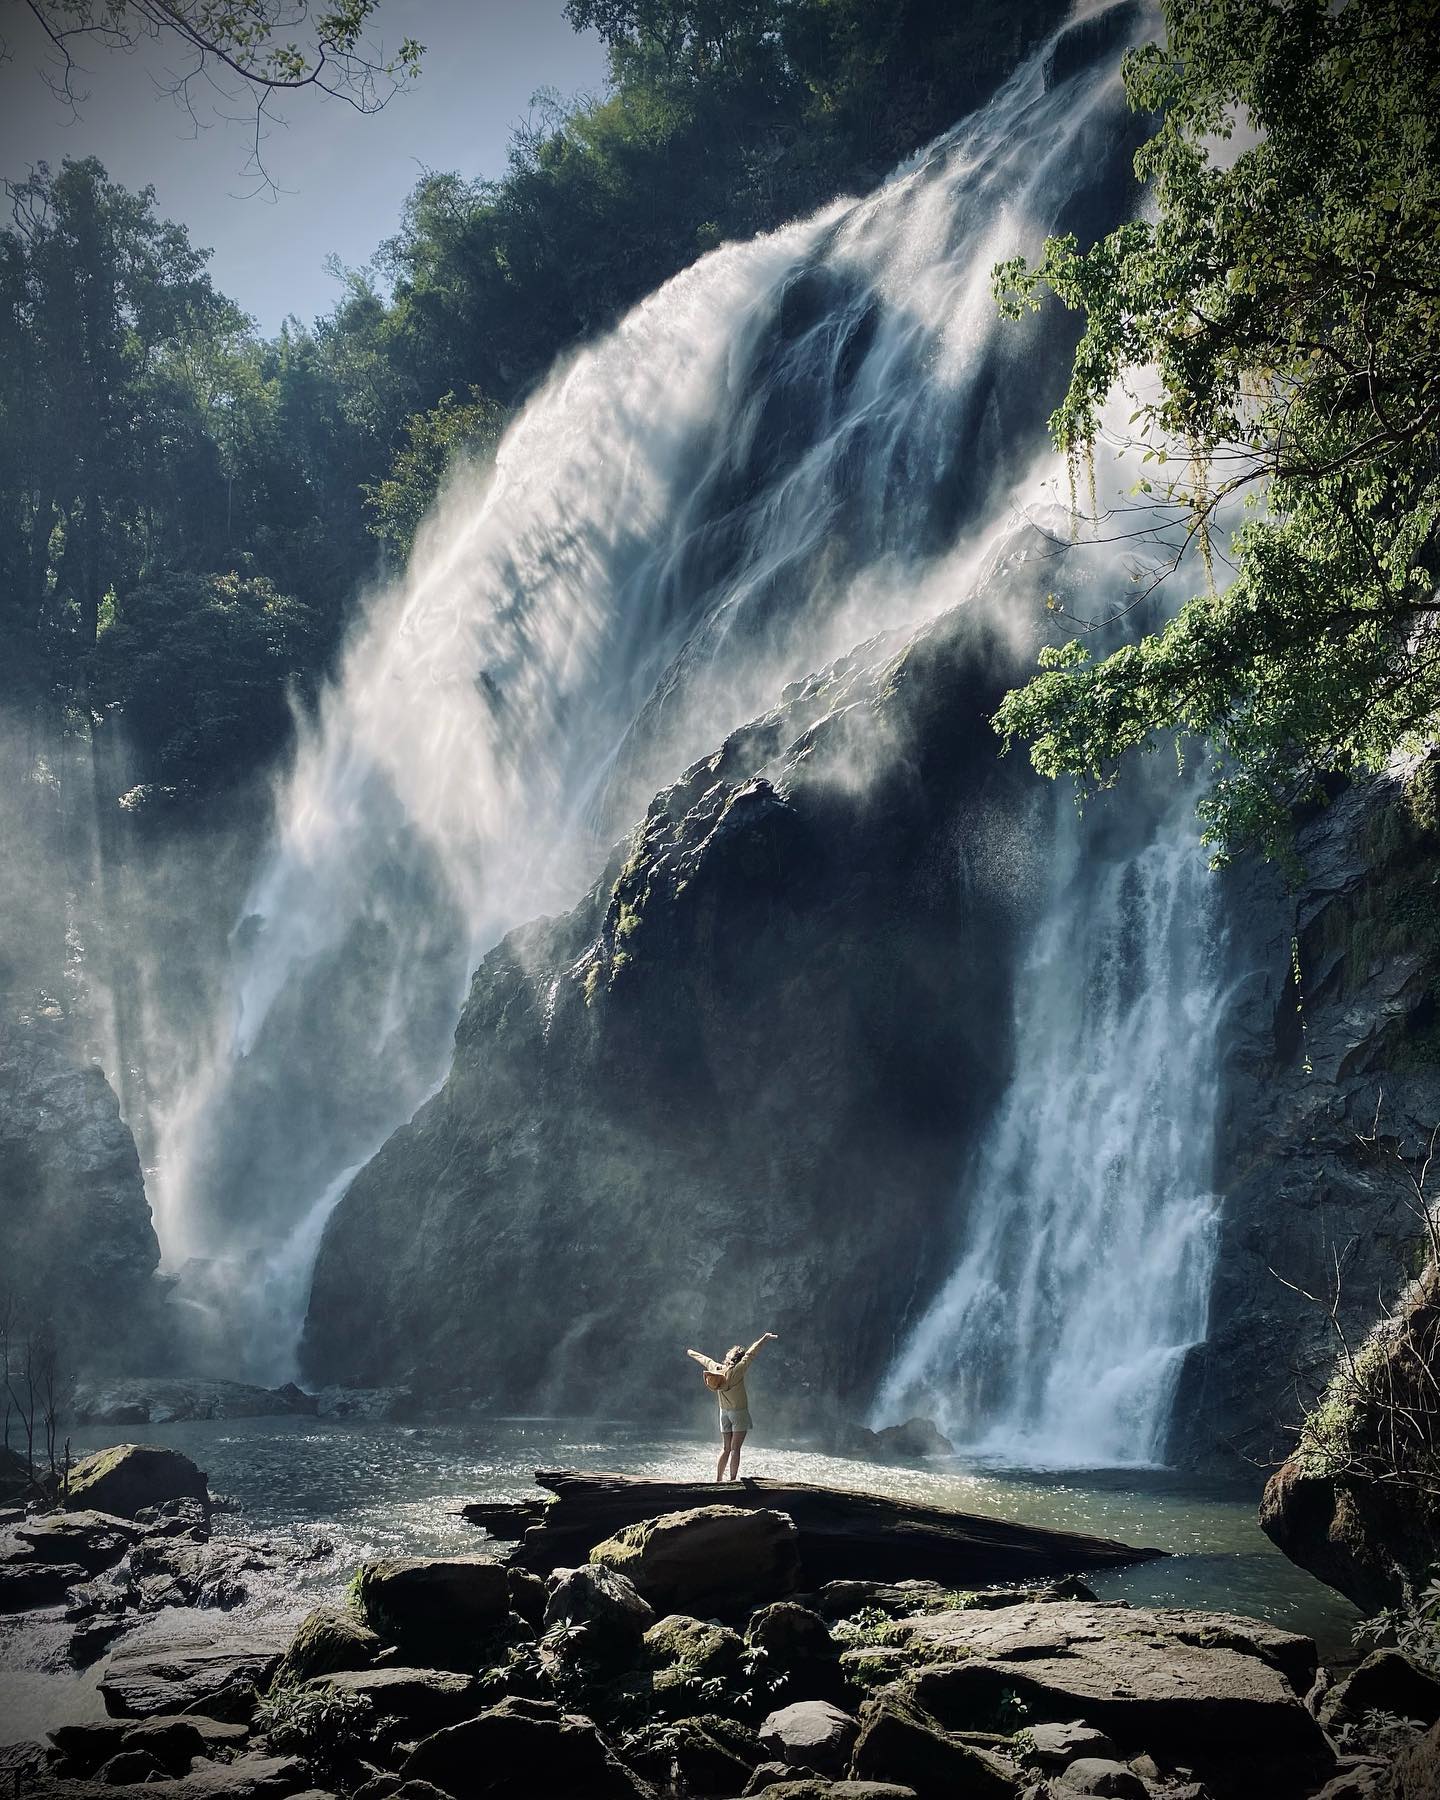 khlong lan national park - khlong lan waterfall